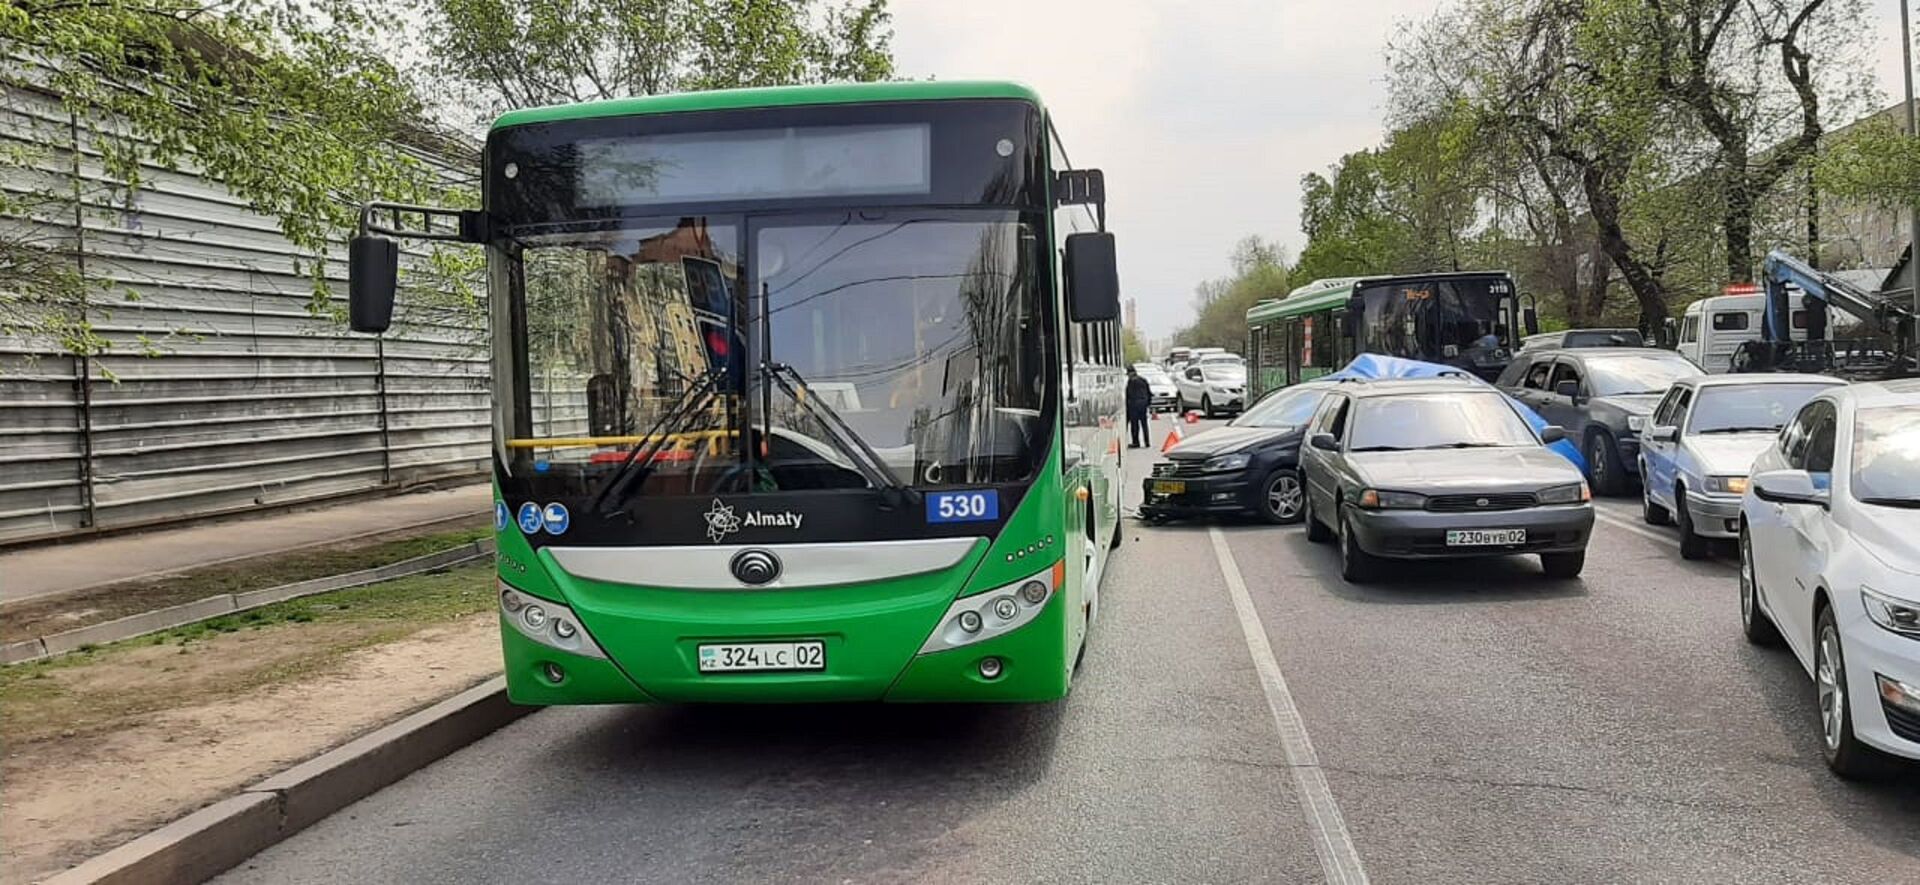 Автомобиль каршеринга въехал в автобус в Алматы: пострадали двое маленьких детей - Sputnik Казахстан, 1920, 18.04.2021